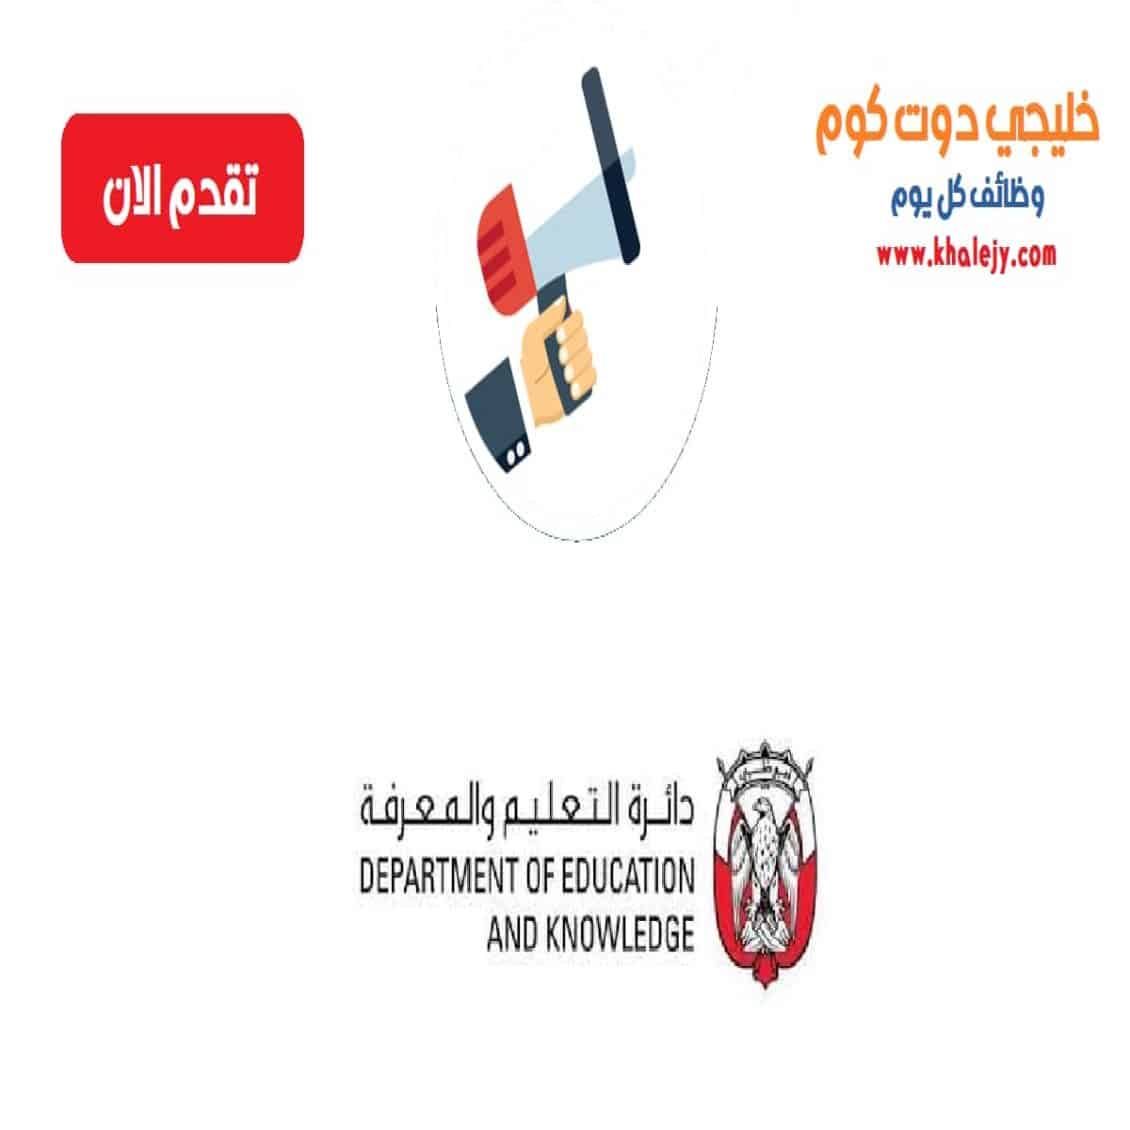 وظائف دائرة التعليم والمعرفة في ابوظبي